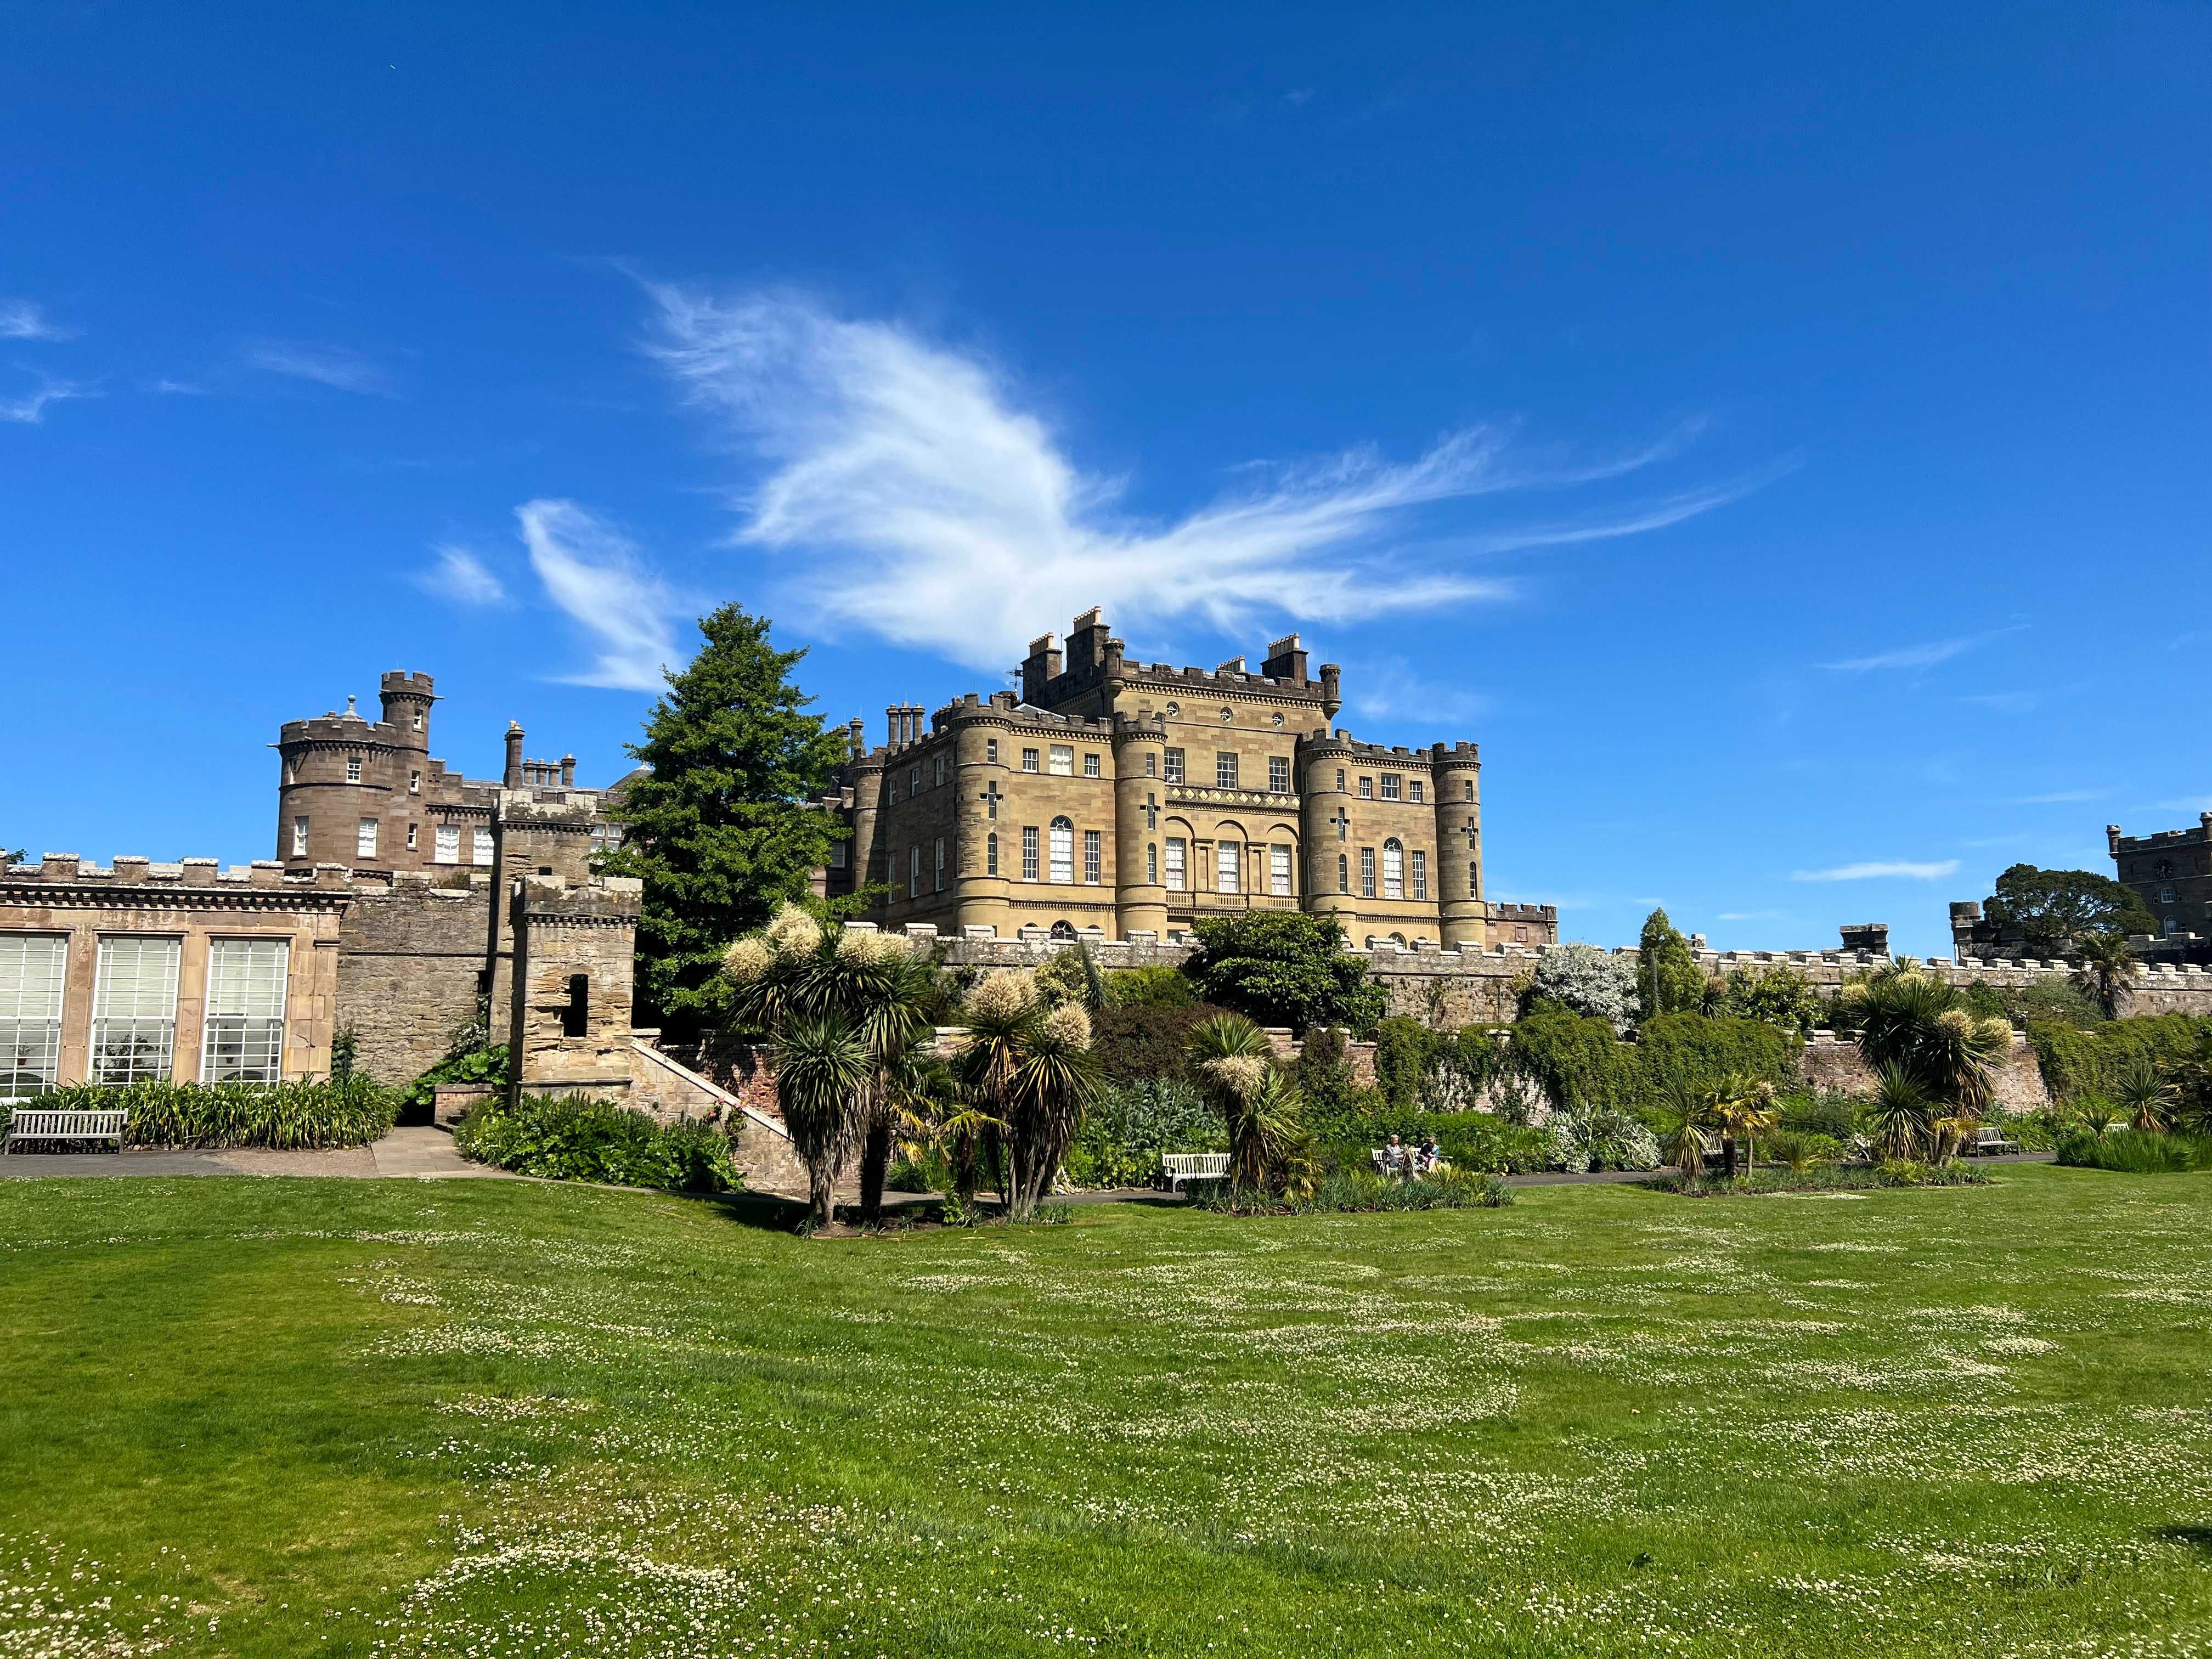 Culzean Castle and Gardens (Vivs Long-Ferguson/Unsplash)